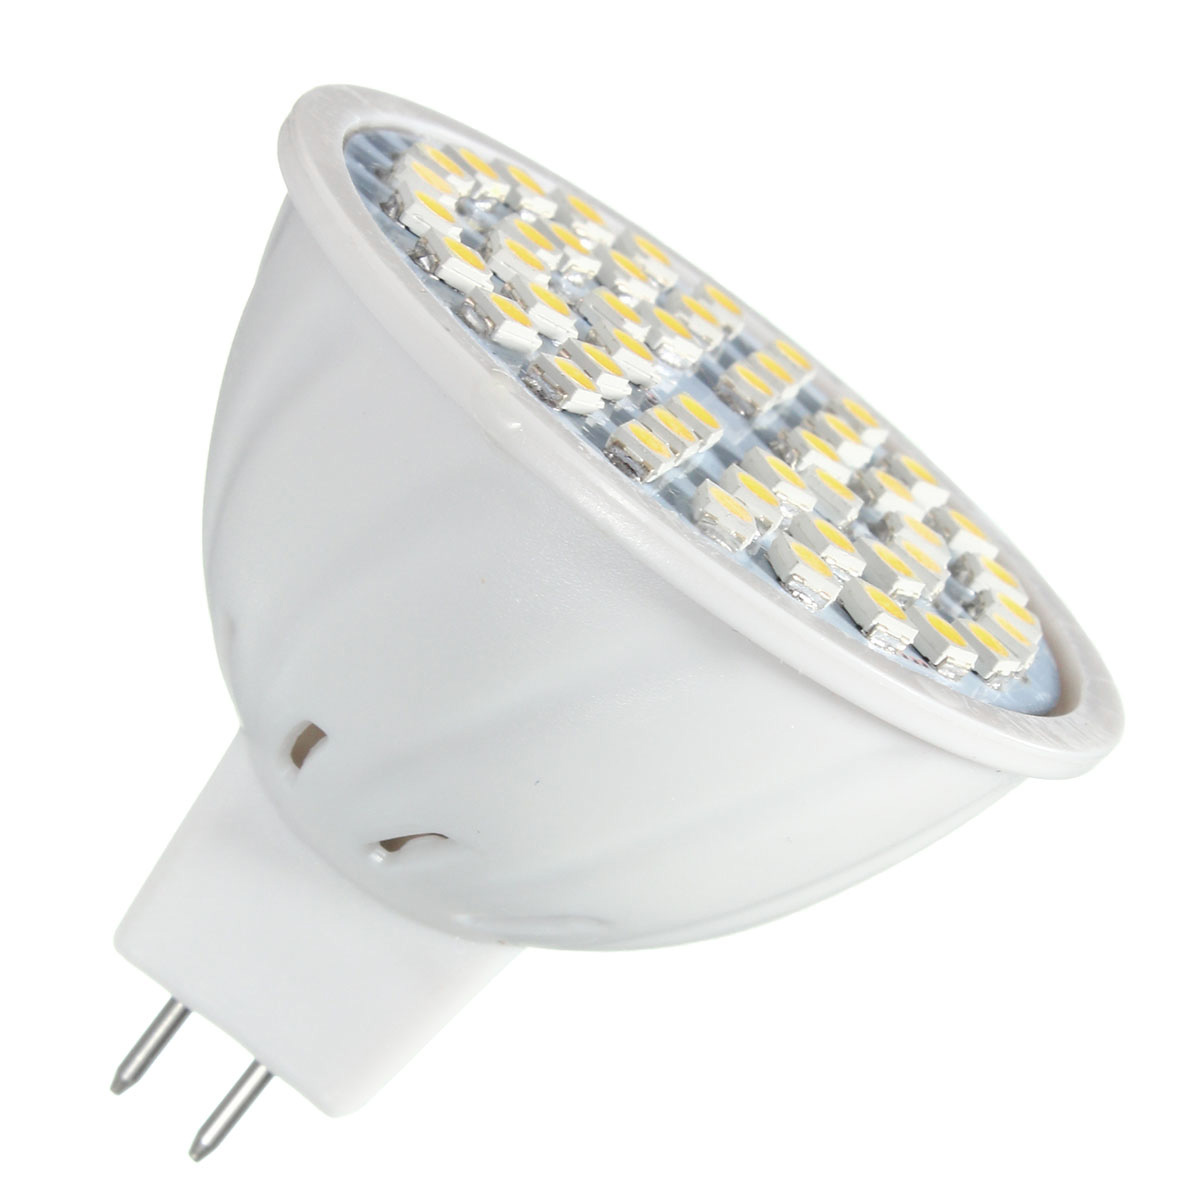 ZX-E27-E14-GU10-MR16-LED-4W-48-SMD-3528-LED-Pure-White-Warm-White-Spot-Lightt-Lamp-Bulb-AC110V-AC220-1076565-6